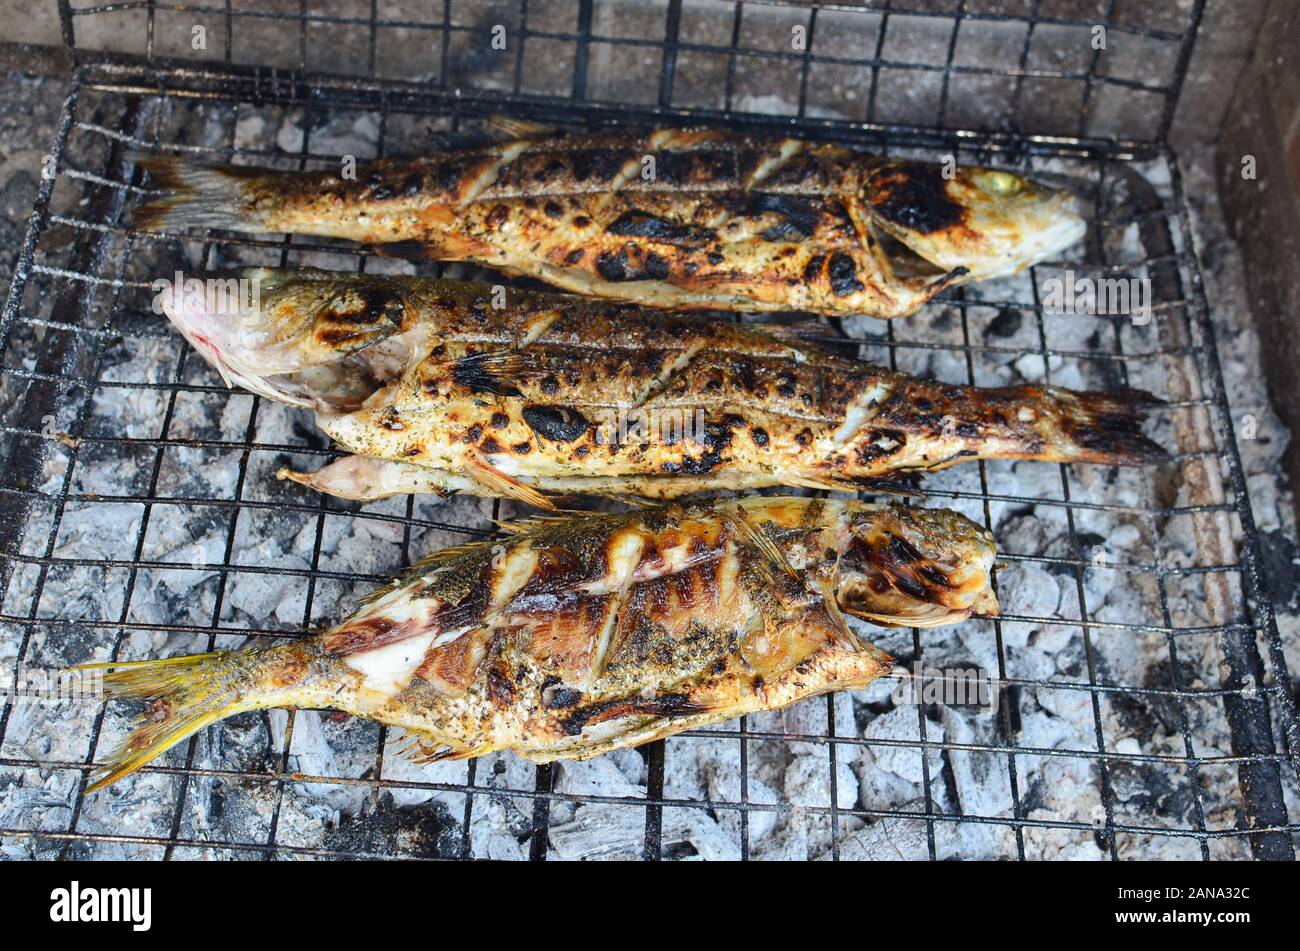 Frische und gesunde Fische, Wolfsbarsch und goldline auf einem Raster über brennende Holzkohle, Gegrilltes und fast fertig bedient zu werden. Stockfoto